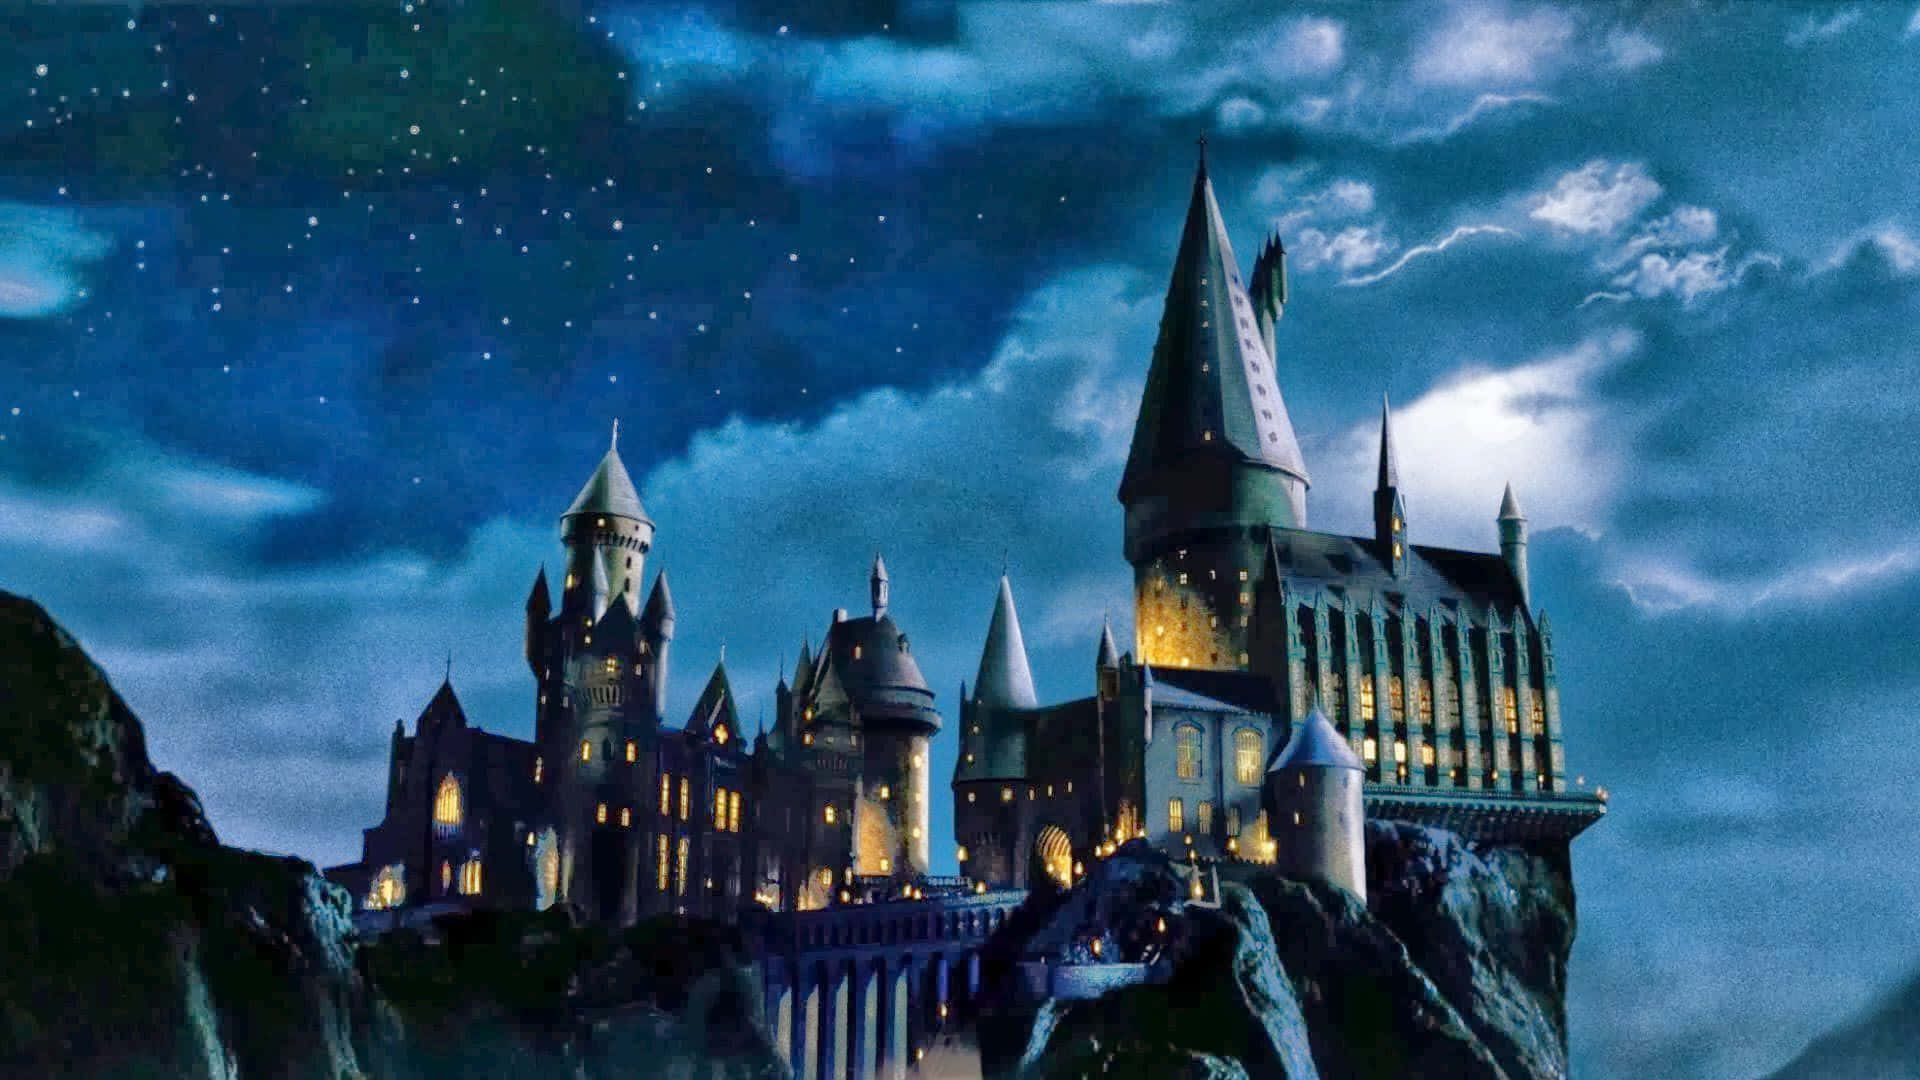 Enjoy Christmas magic at Hogwarts Wallpaper